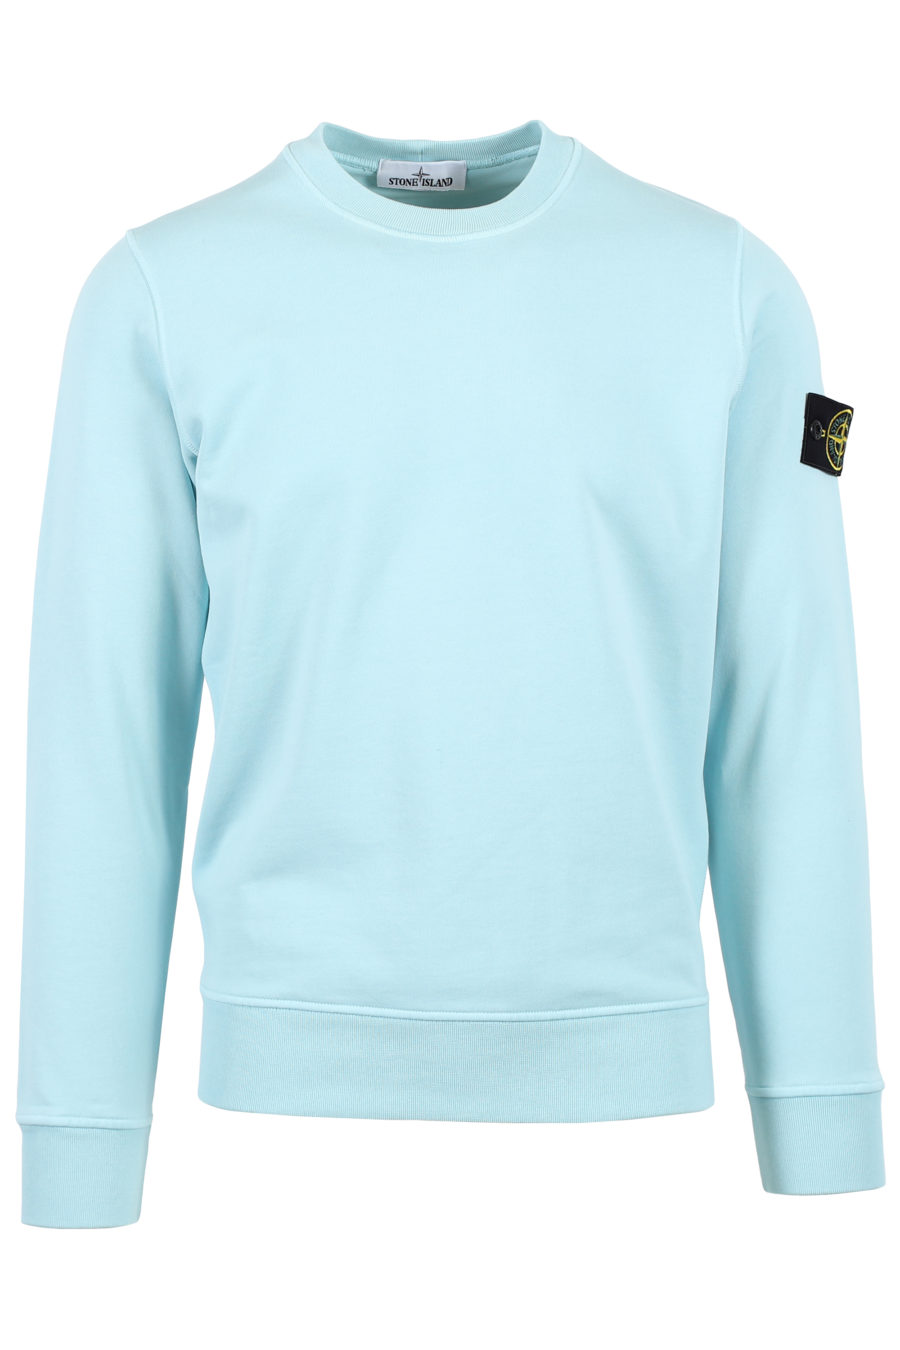 Blaues Sweatshirt mit Aufnäher - IMG 3650